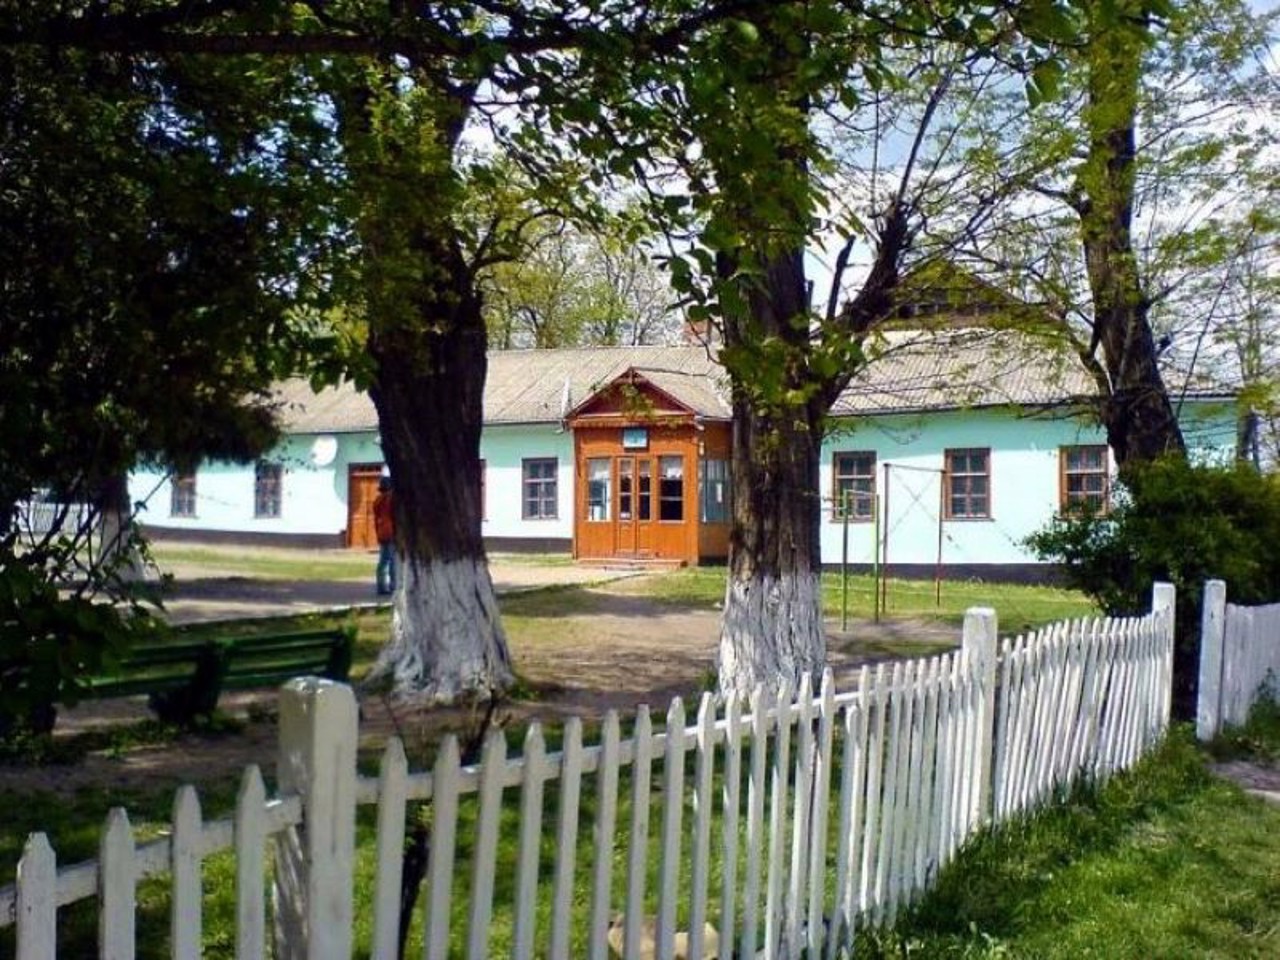 Kukavka village